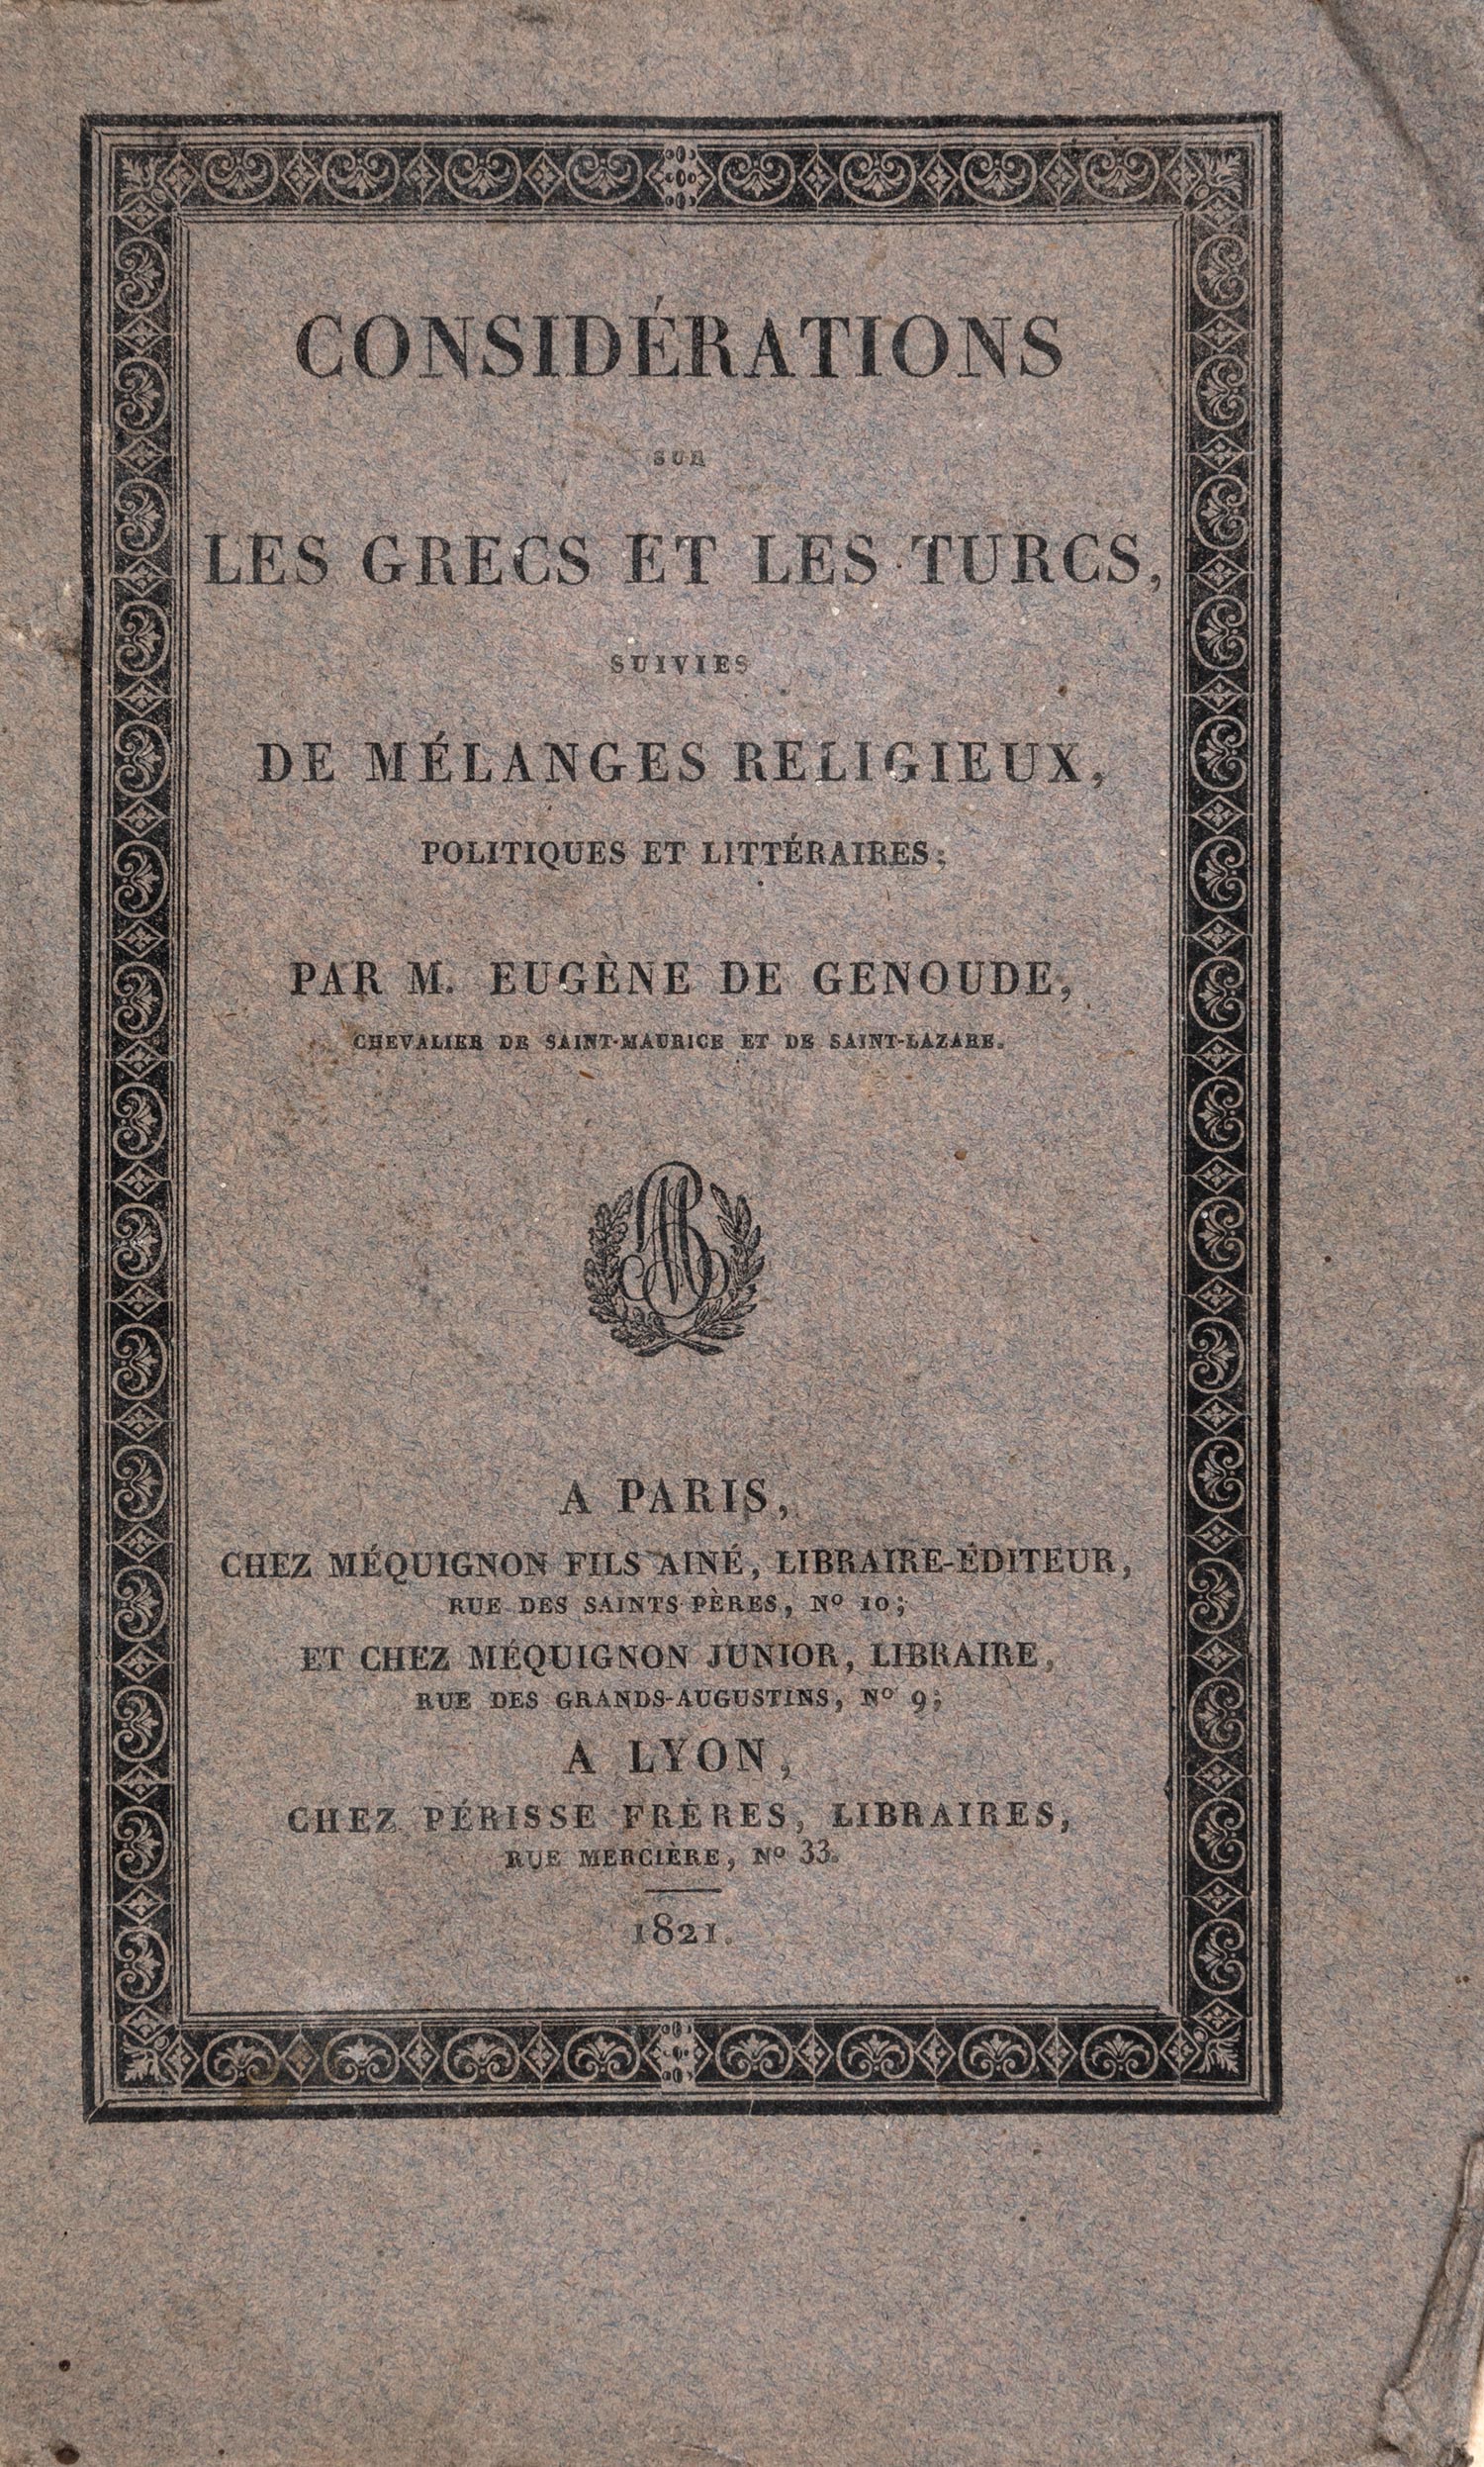 GENOUDE, Eugène de.